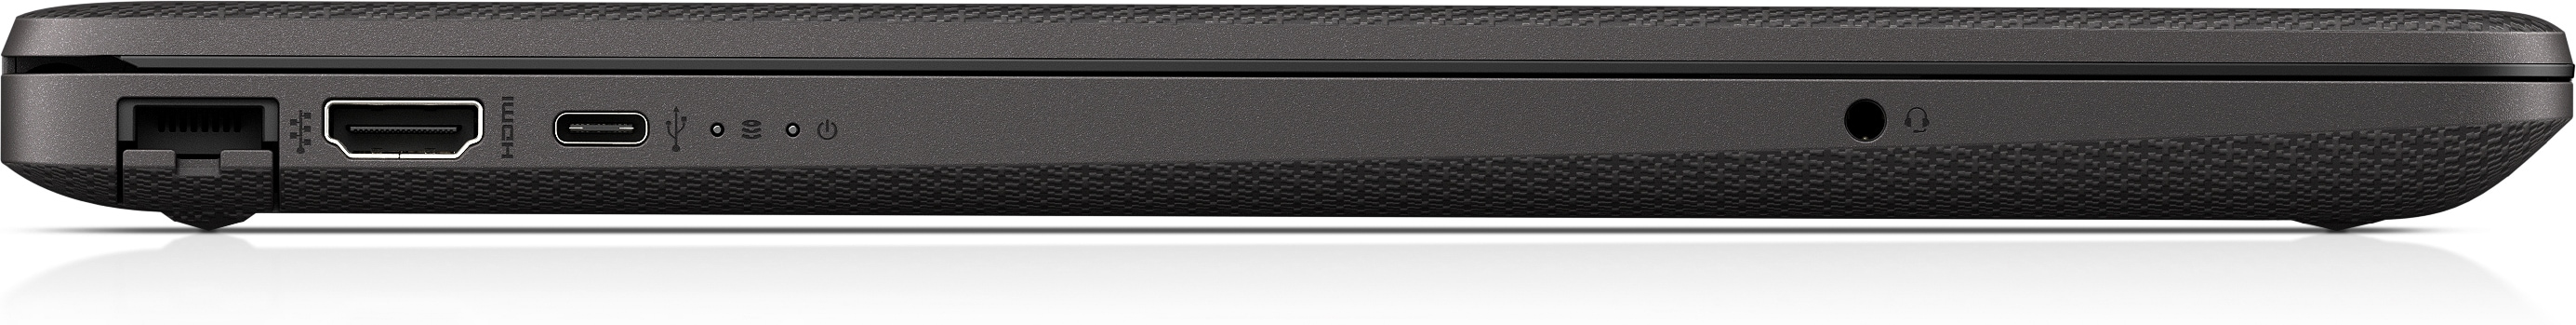 HP 255 G8 Notebook PC [4K7Y4EA]